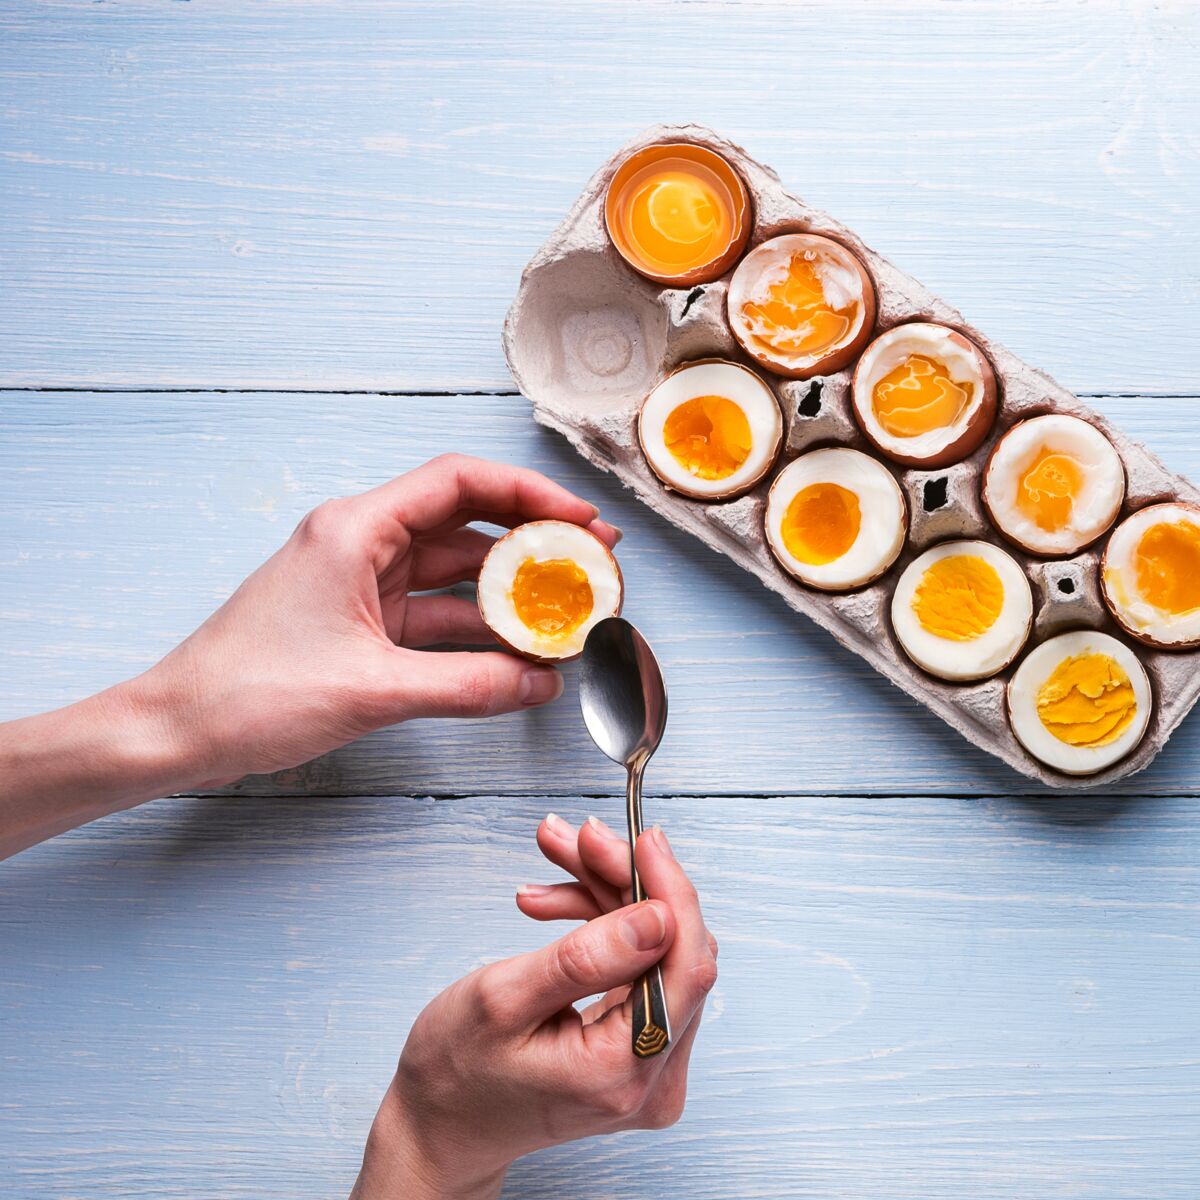 Cholesterol Diabete Combien D œufs Peut On Manger Par Semaine Femme Actuelle Le Mag